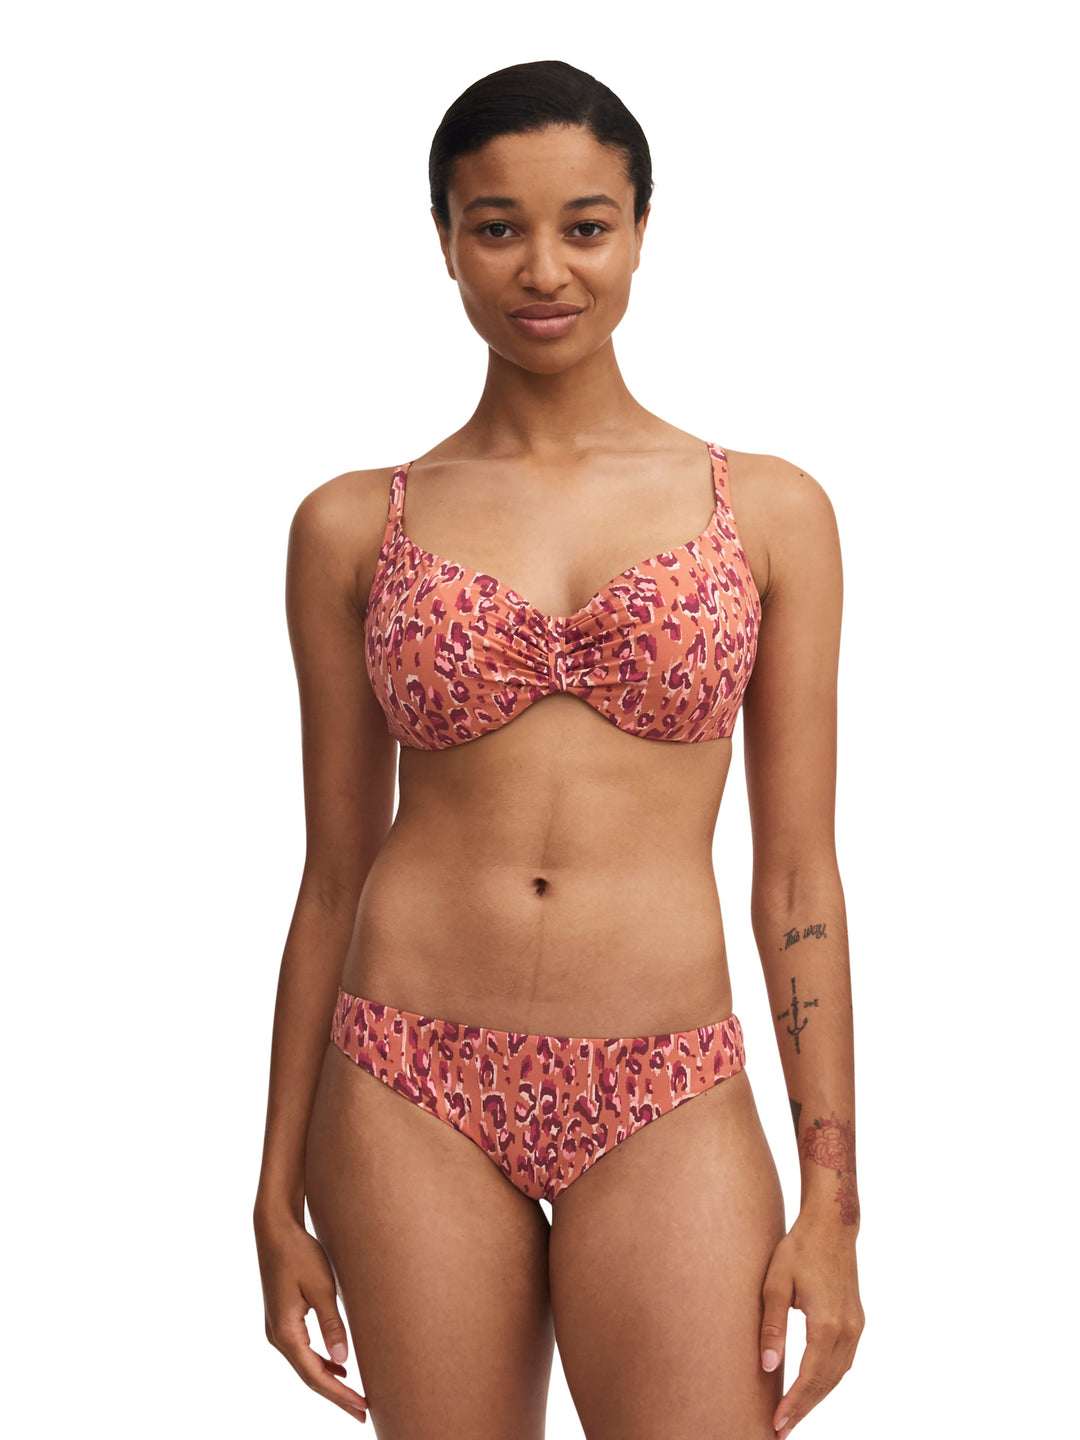 Chantelle Swimwear Eos Covering Underwired Bra - Orange Leopard Full Cup Bikini Chantelle 